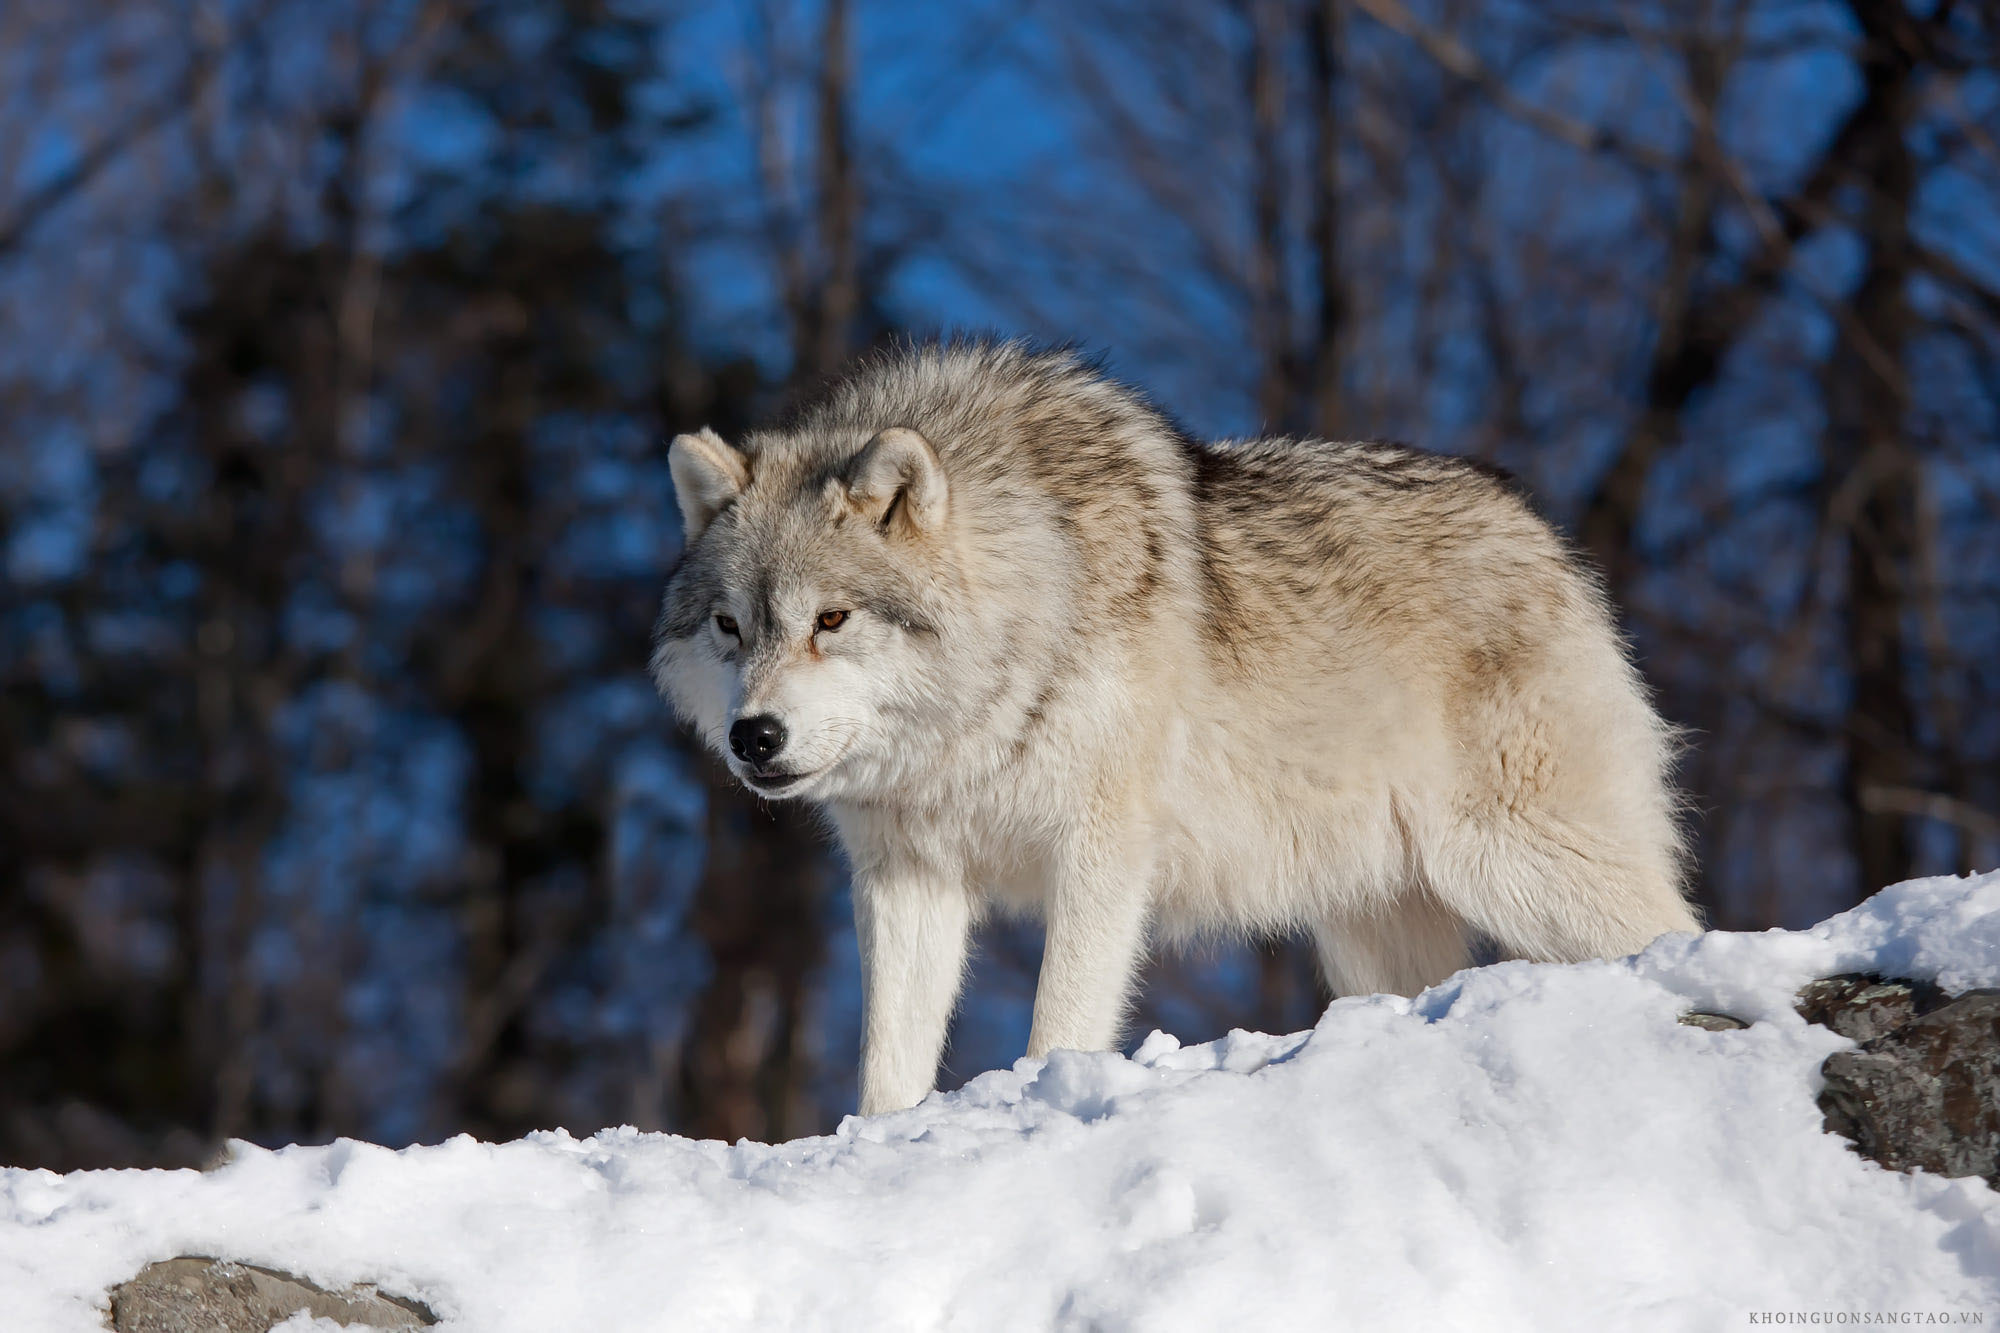 Nếu bạn yêu thích hoang dã, bạn sẽ không thể bỏ qua bộ sưu tập hình ảnh sói hoang dã này. Mỗi hình ảnh đều toát lên sự mạnh mẽ, uyển chuyển và đầy tinh tế của sự sống động trong thiên nhiên.